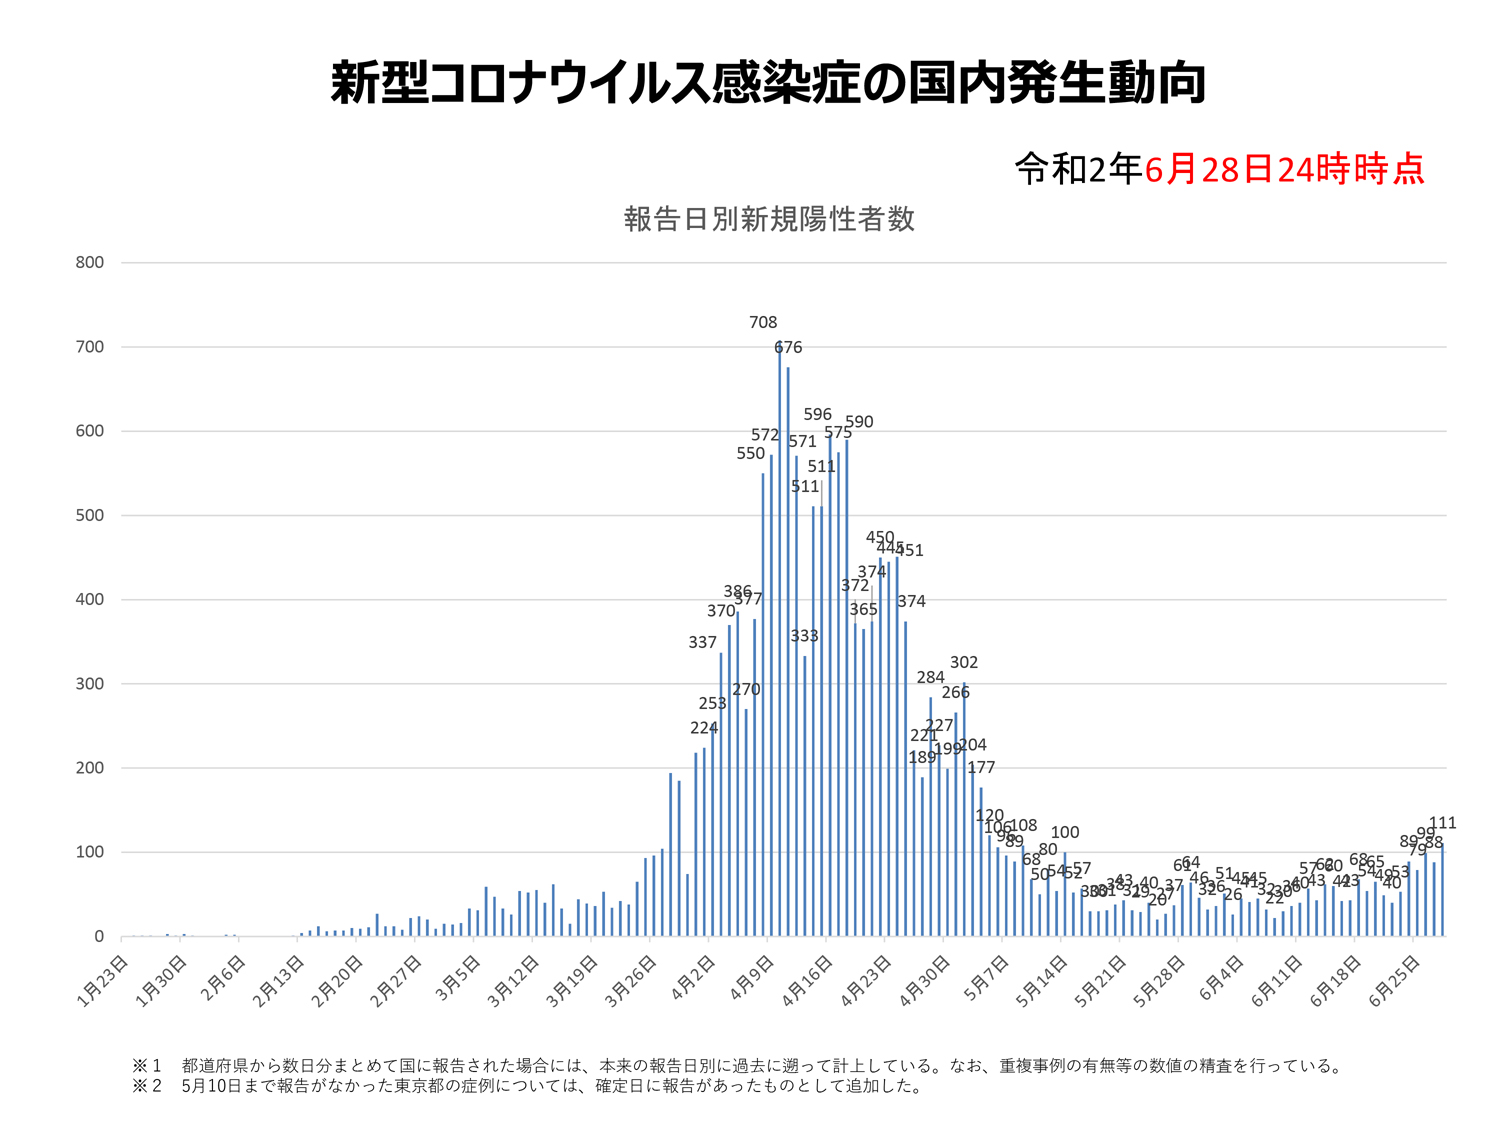 Ein leichter Anstieg: Die Ent­wick­lung der Covid-19-Anste­­ckun­­gen in Japan vom 23. Janu­ar bis 28. Juni 2020.